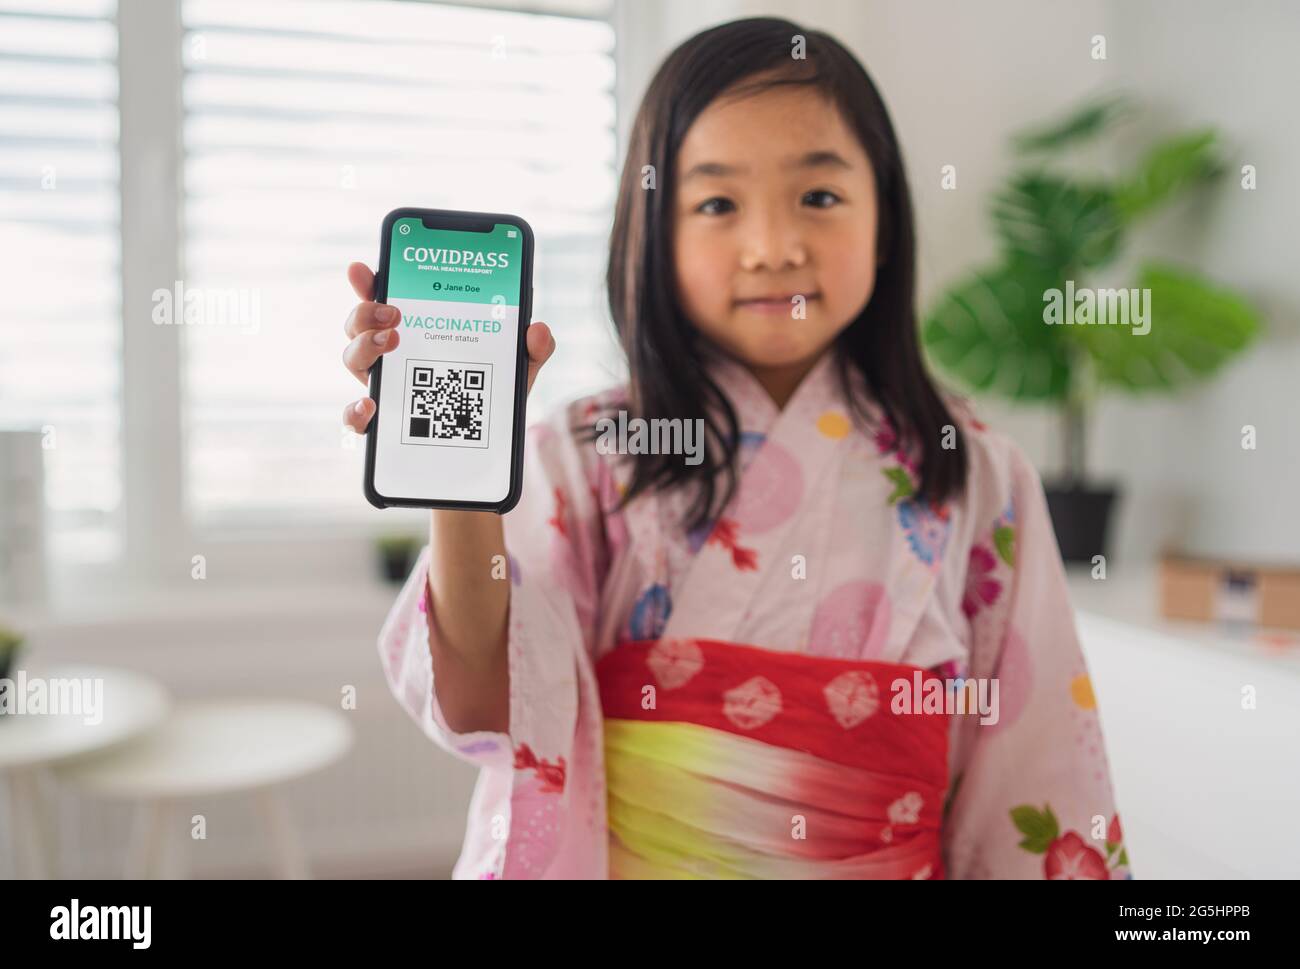 Kleines japanisches Kind mit traditioneller Tracht, das den Impfpass covid-19 auf dem Smartphone zeigt. Stockfoto